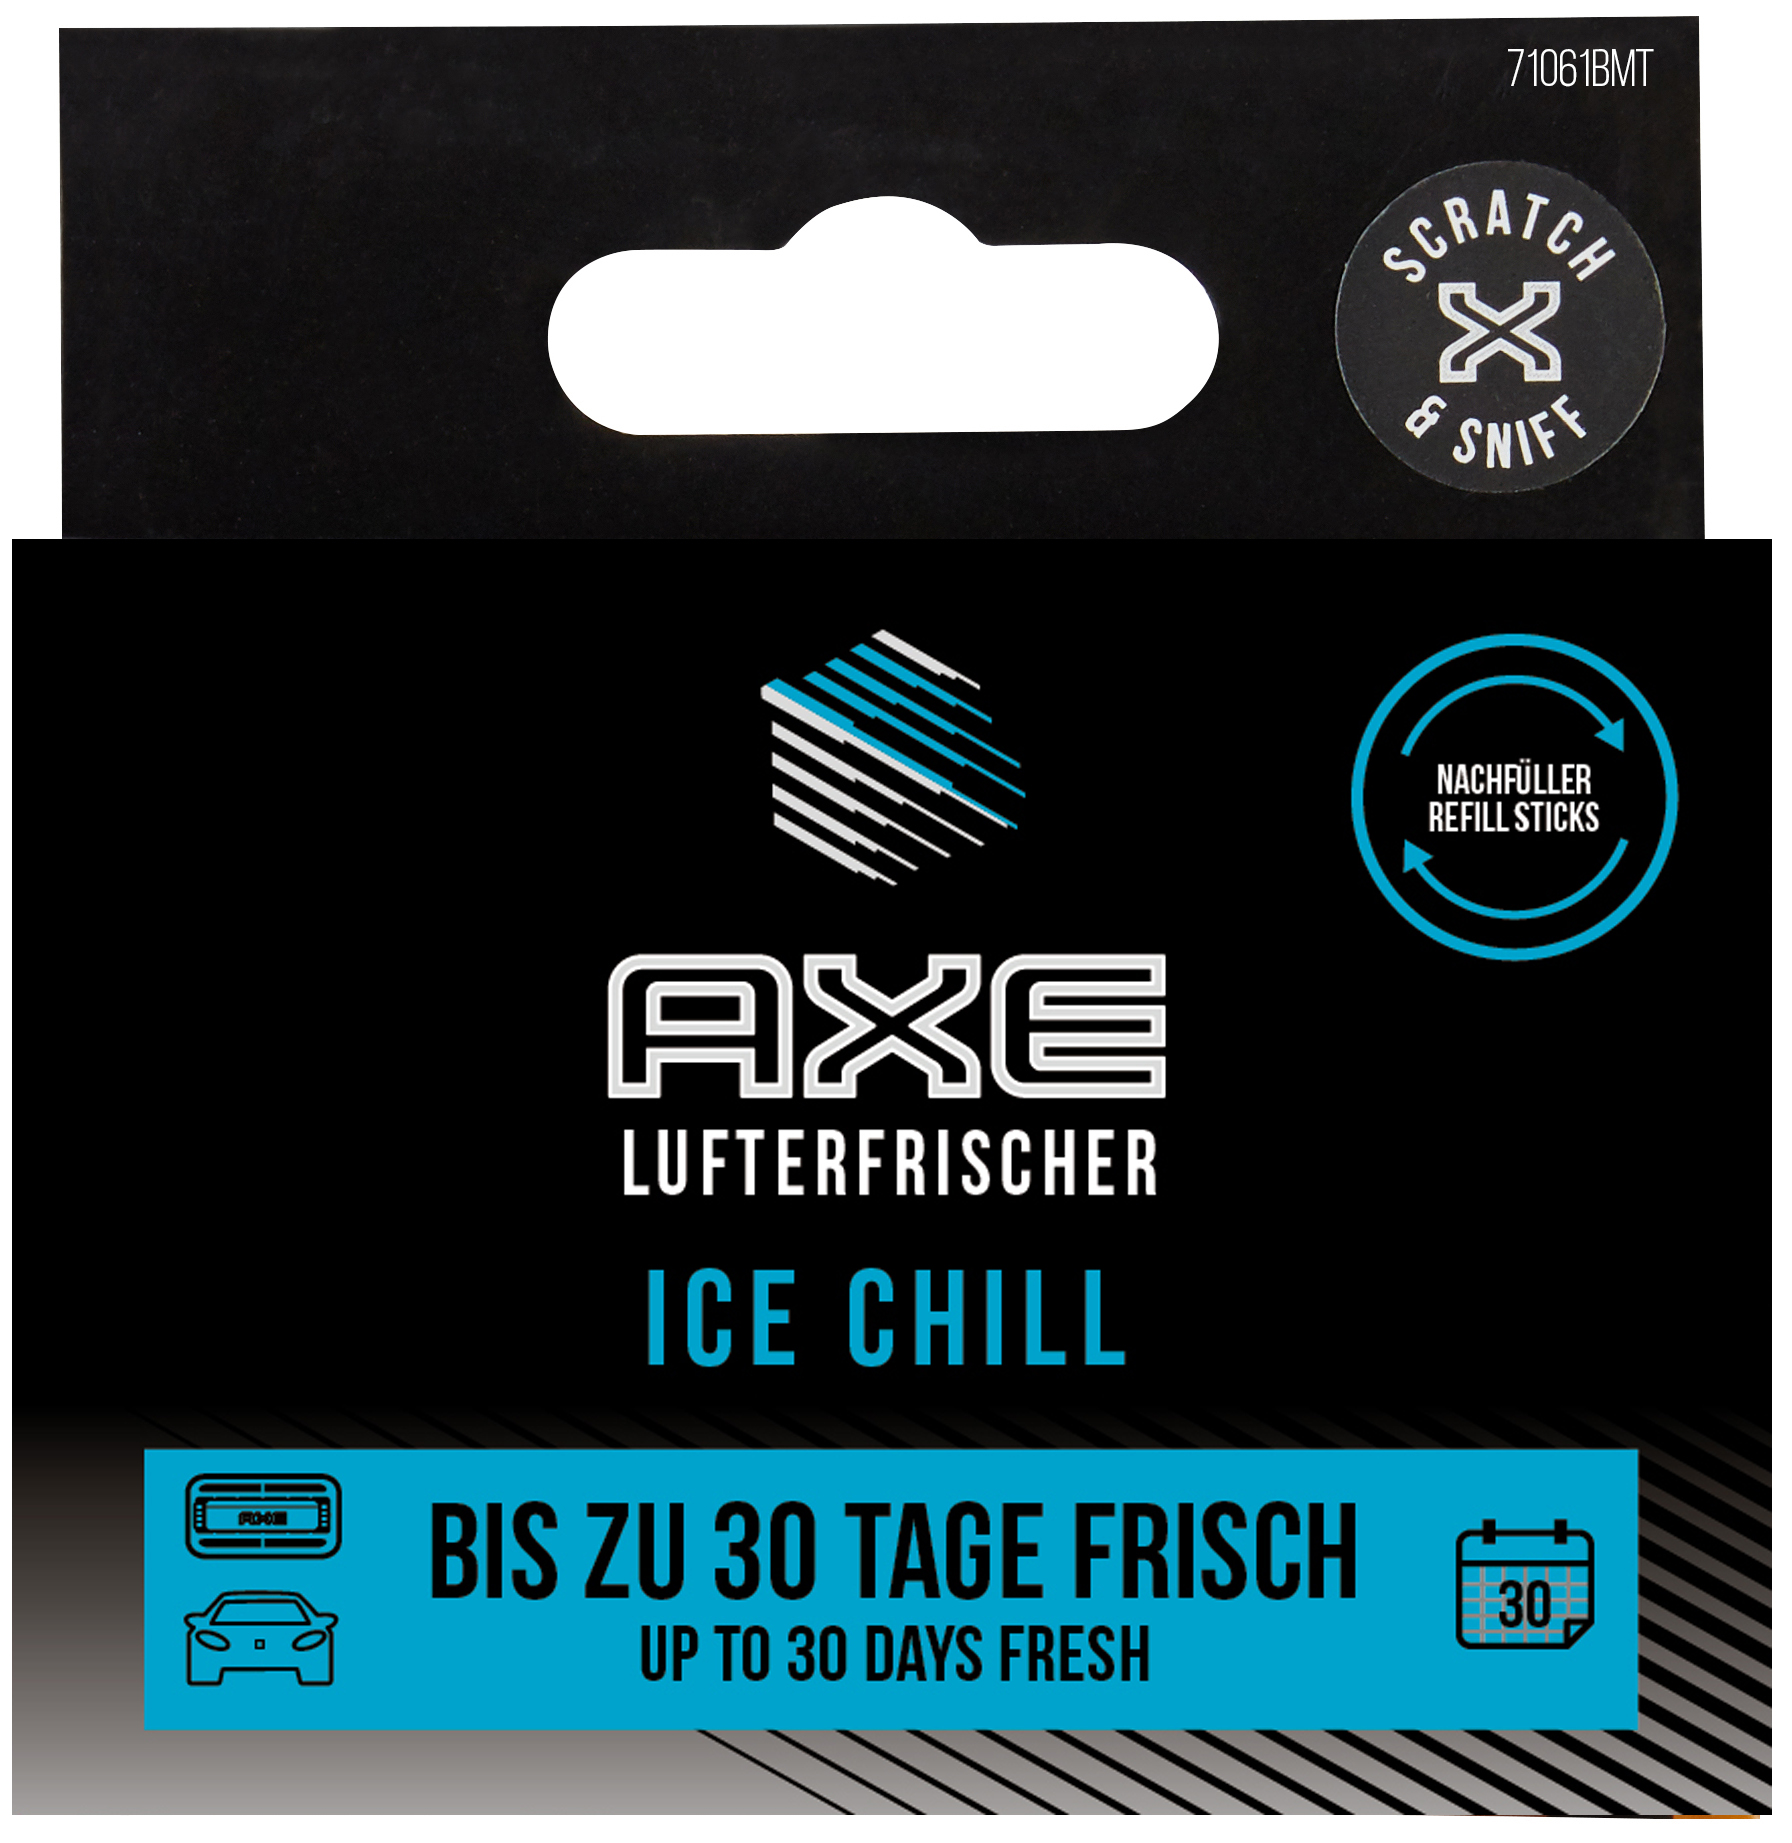 AXE Alu Refill Sticks Air - Ice Lufterfrischer, Vent Chill Schwarz